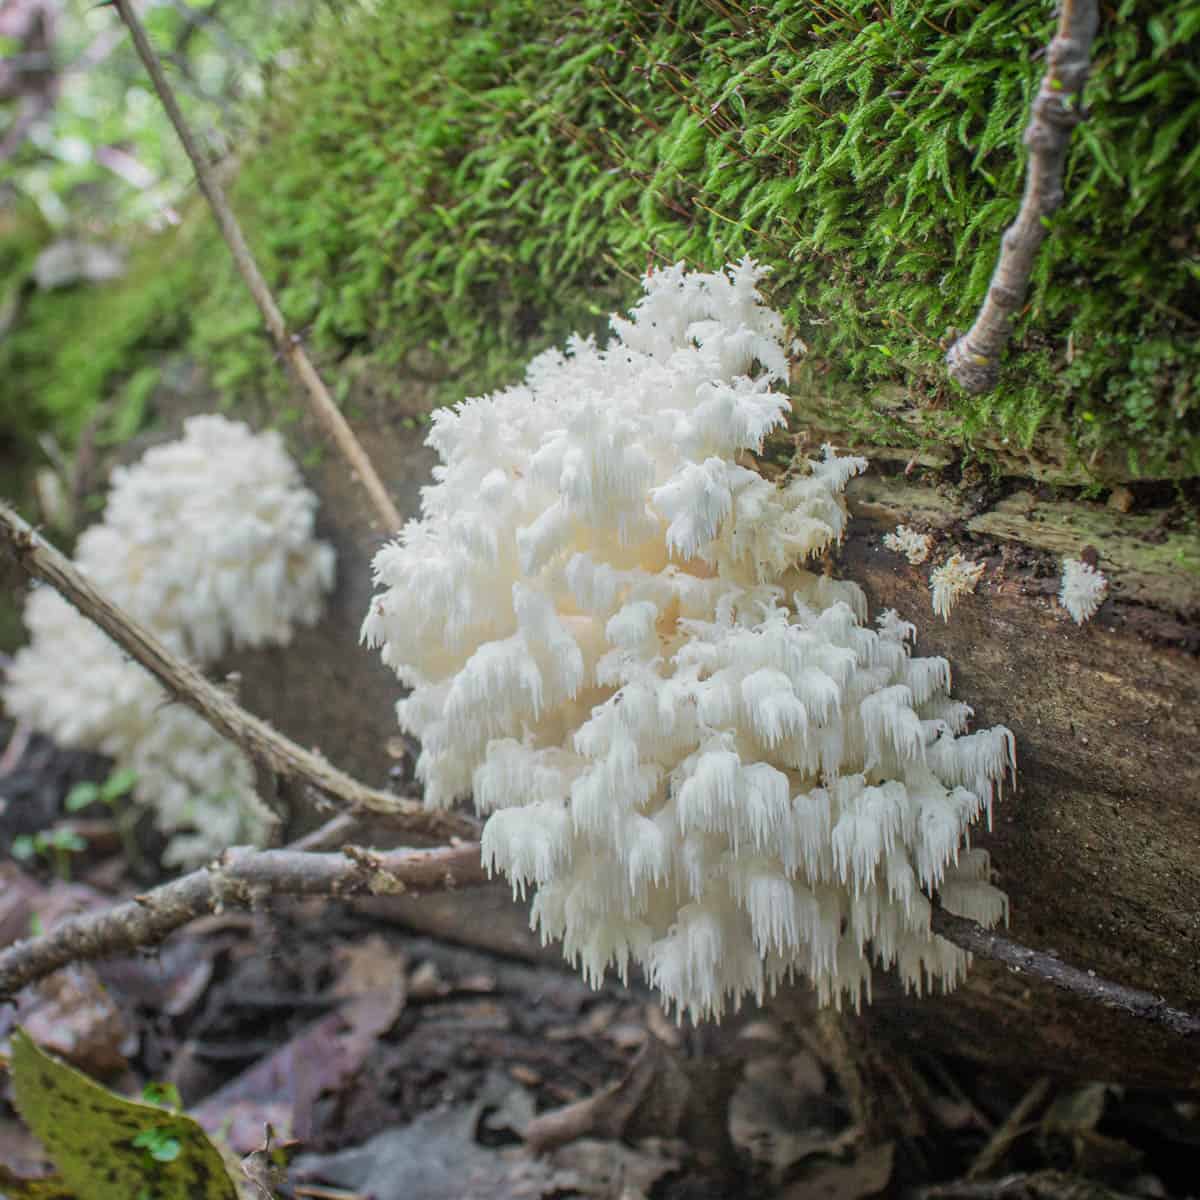 Hericium mushrooms or Hericium coralloides